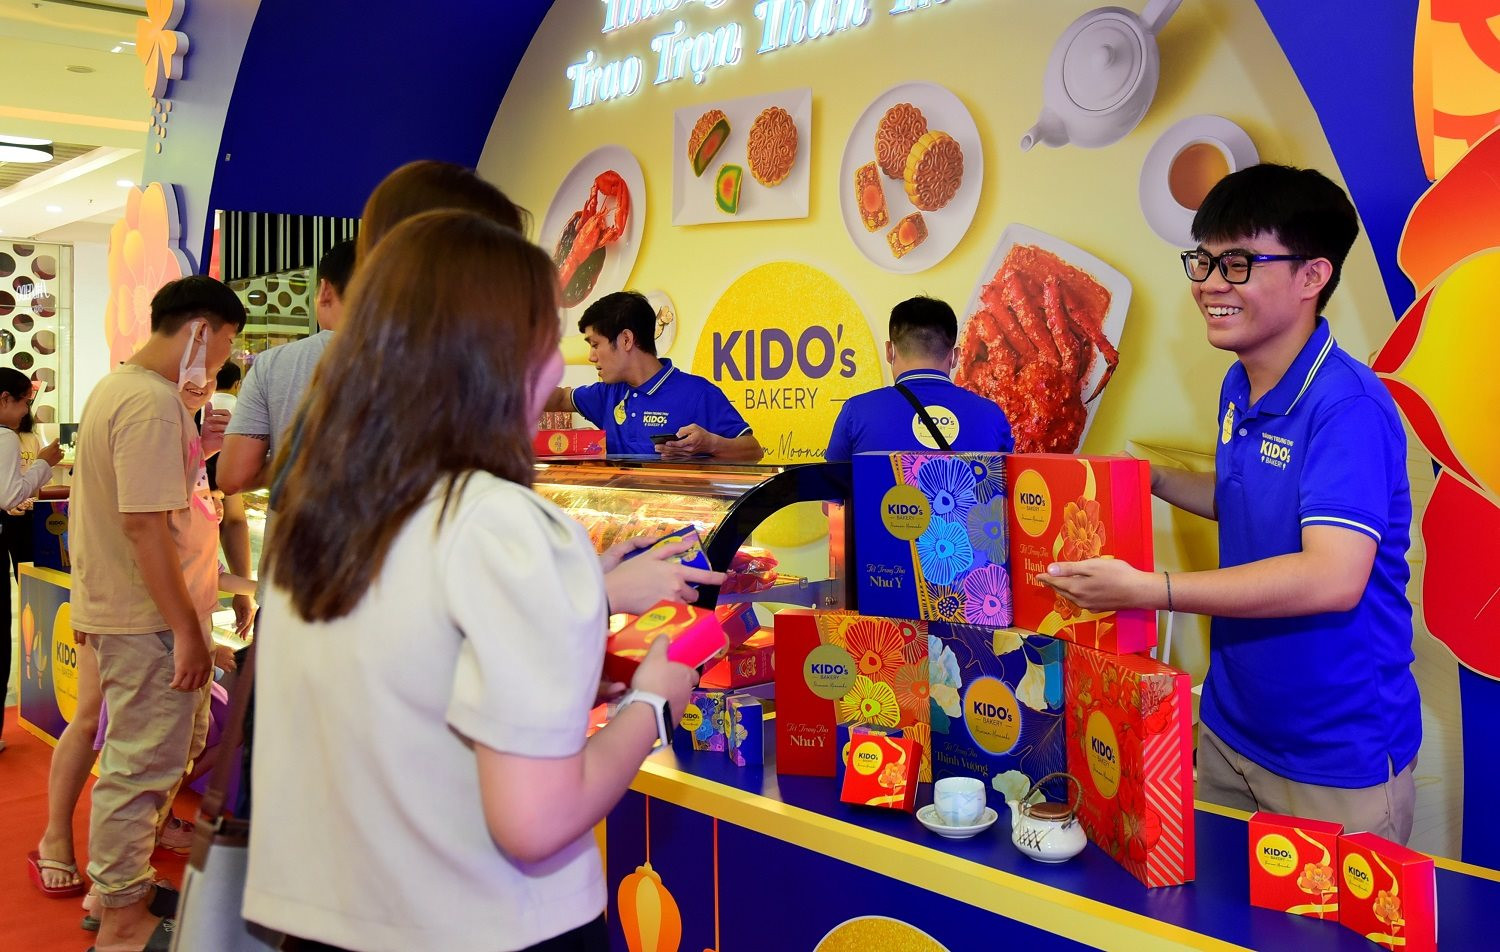 Kido năm thứ 3 quay lại thị trường bánh trung thu: Sản lượng hiện đã tăng hơn 60% so với cùng kỳ - Ảnh 1.